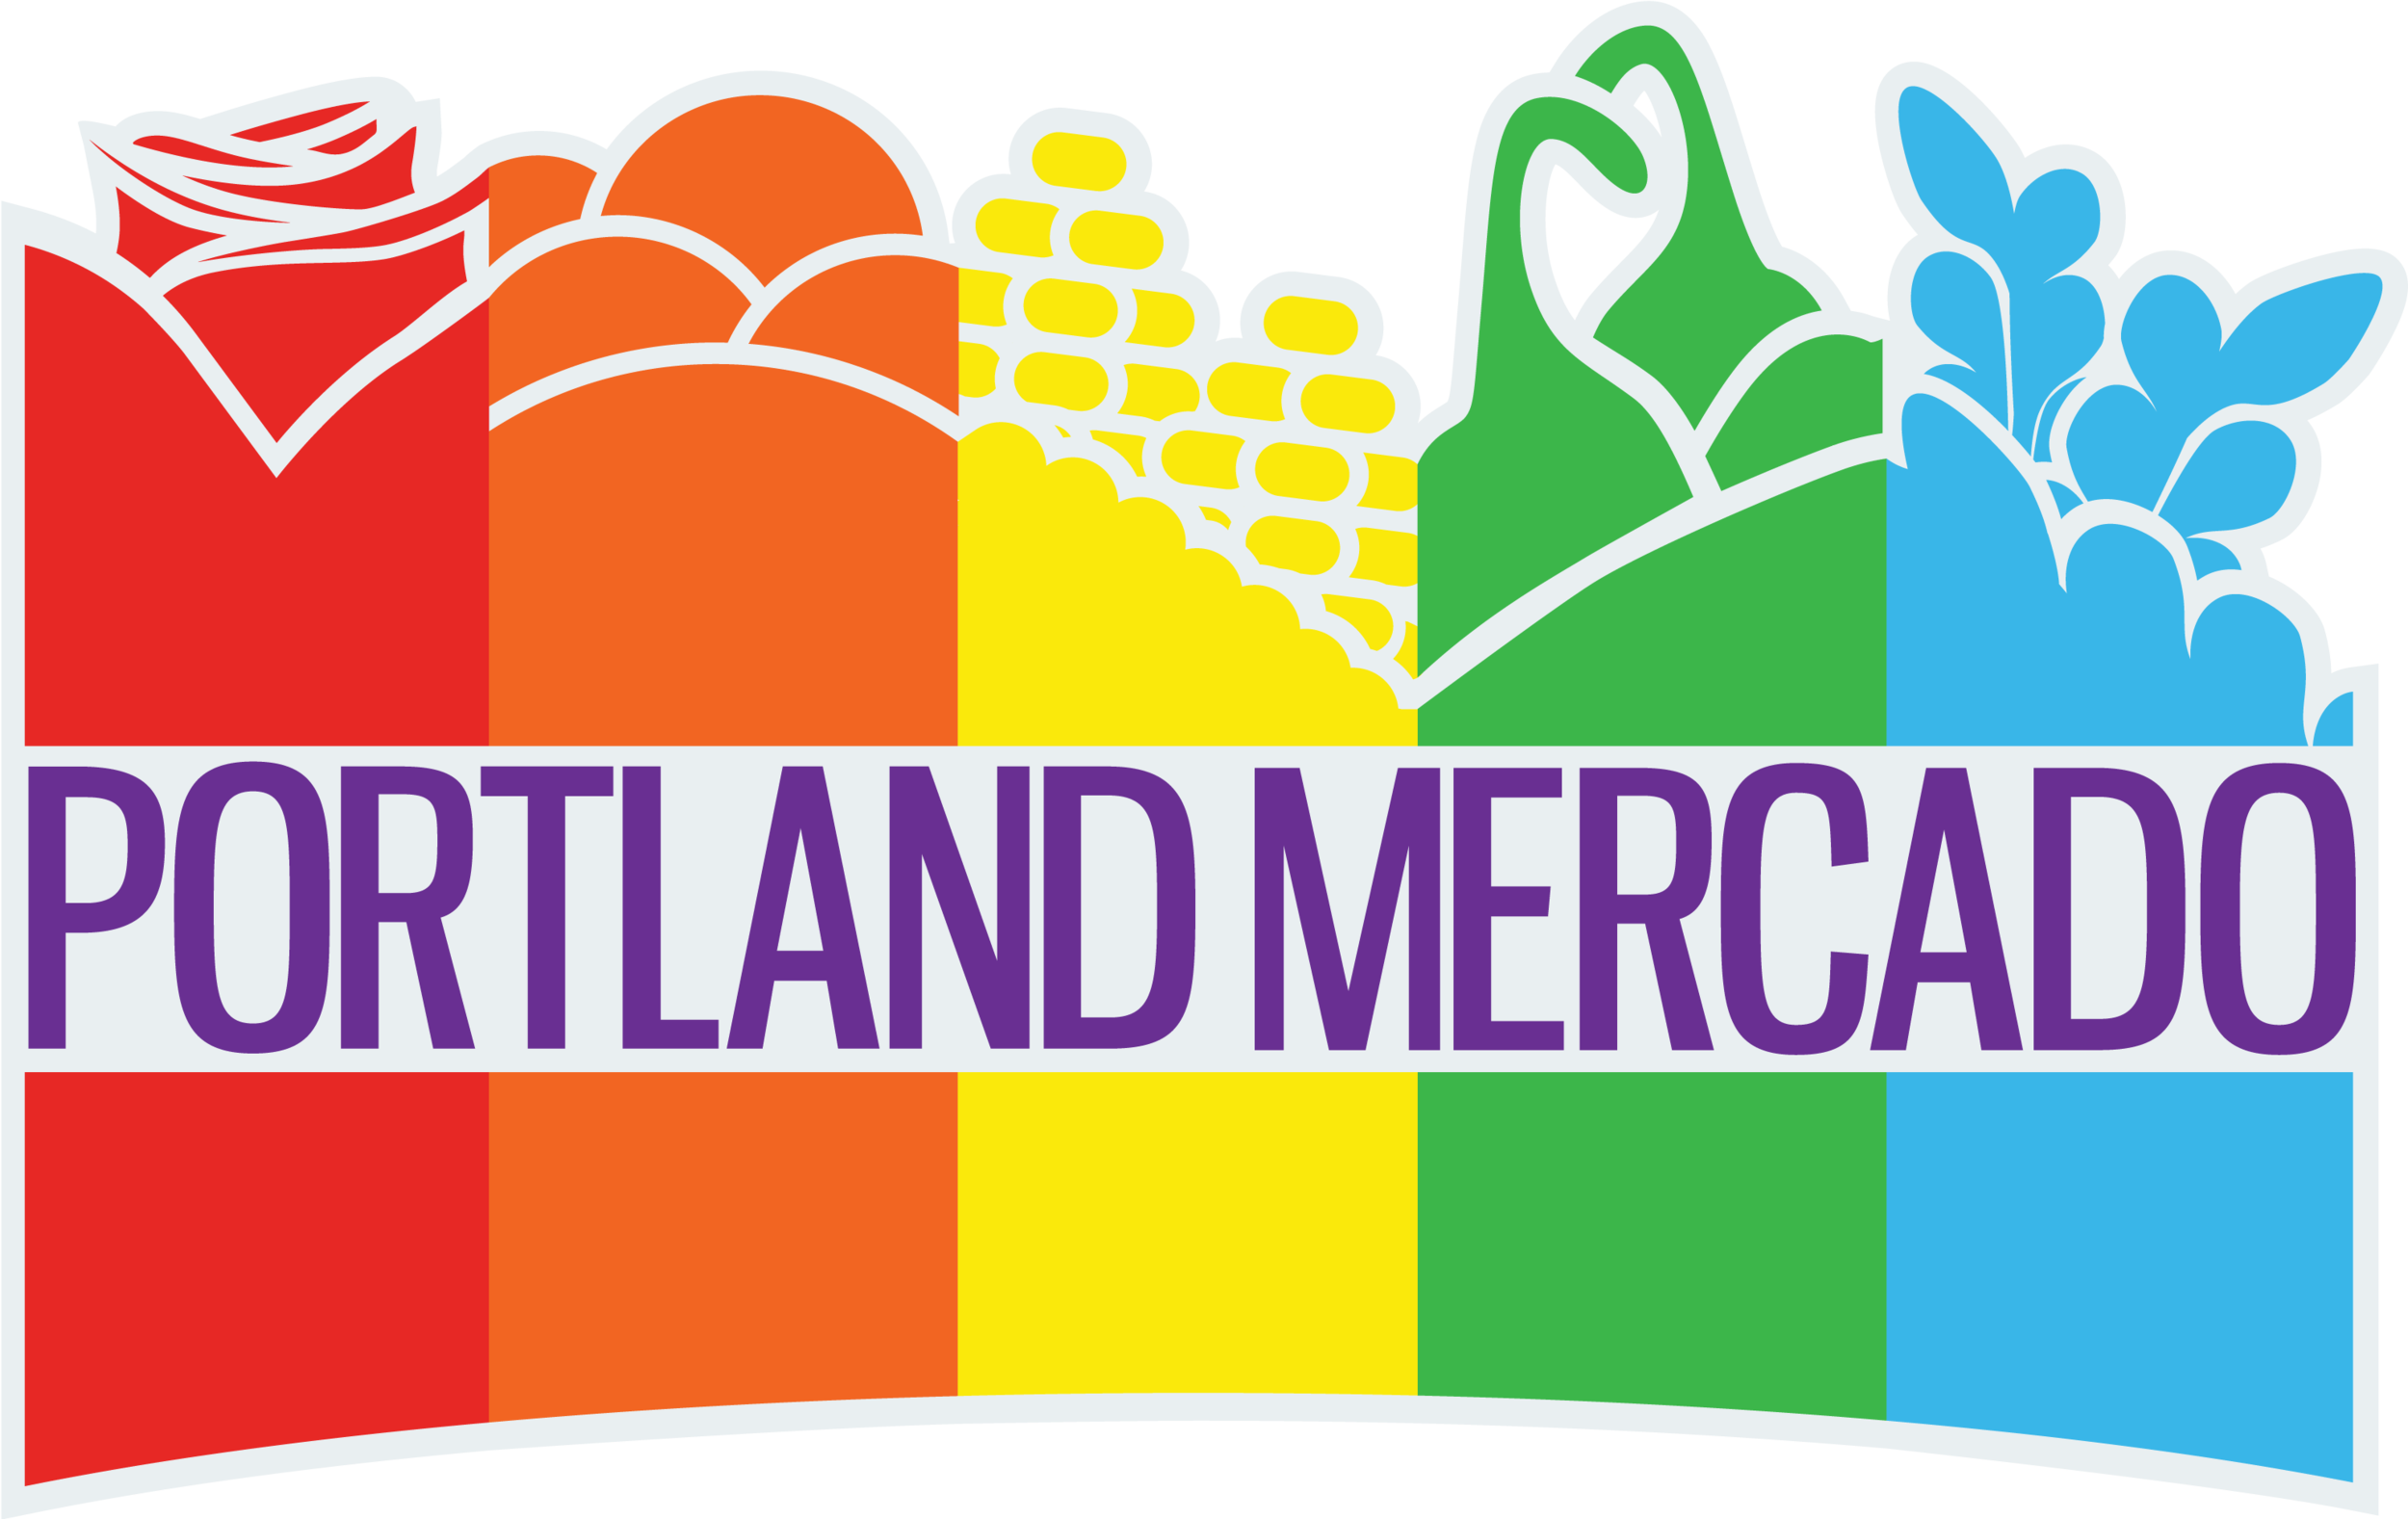 Portland-Mercado-final - Copy.png